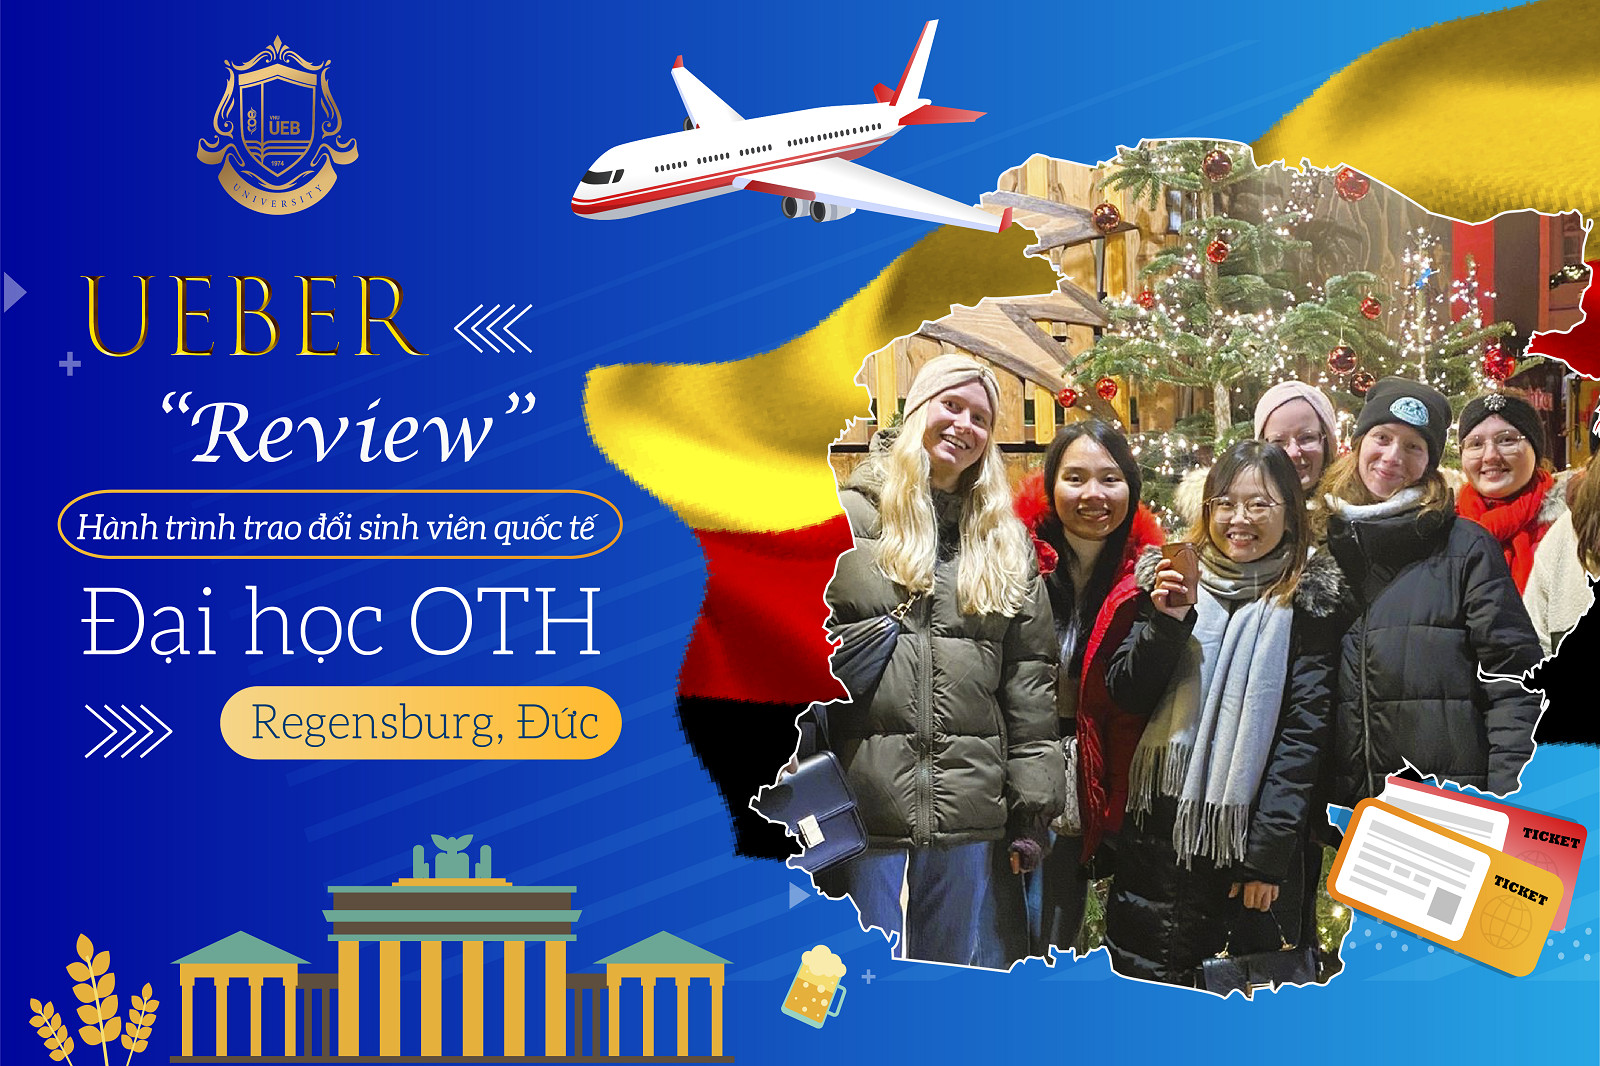 “Review” cực xịn của sinh viên UEB với hành trình trao đổi quốc tế tại Đại học OTH Regensburg, Đức